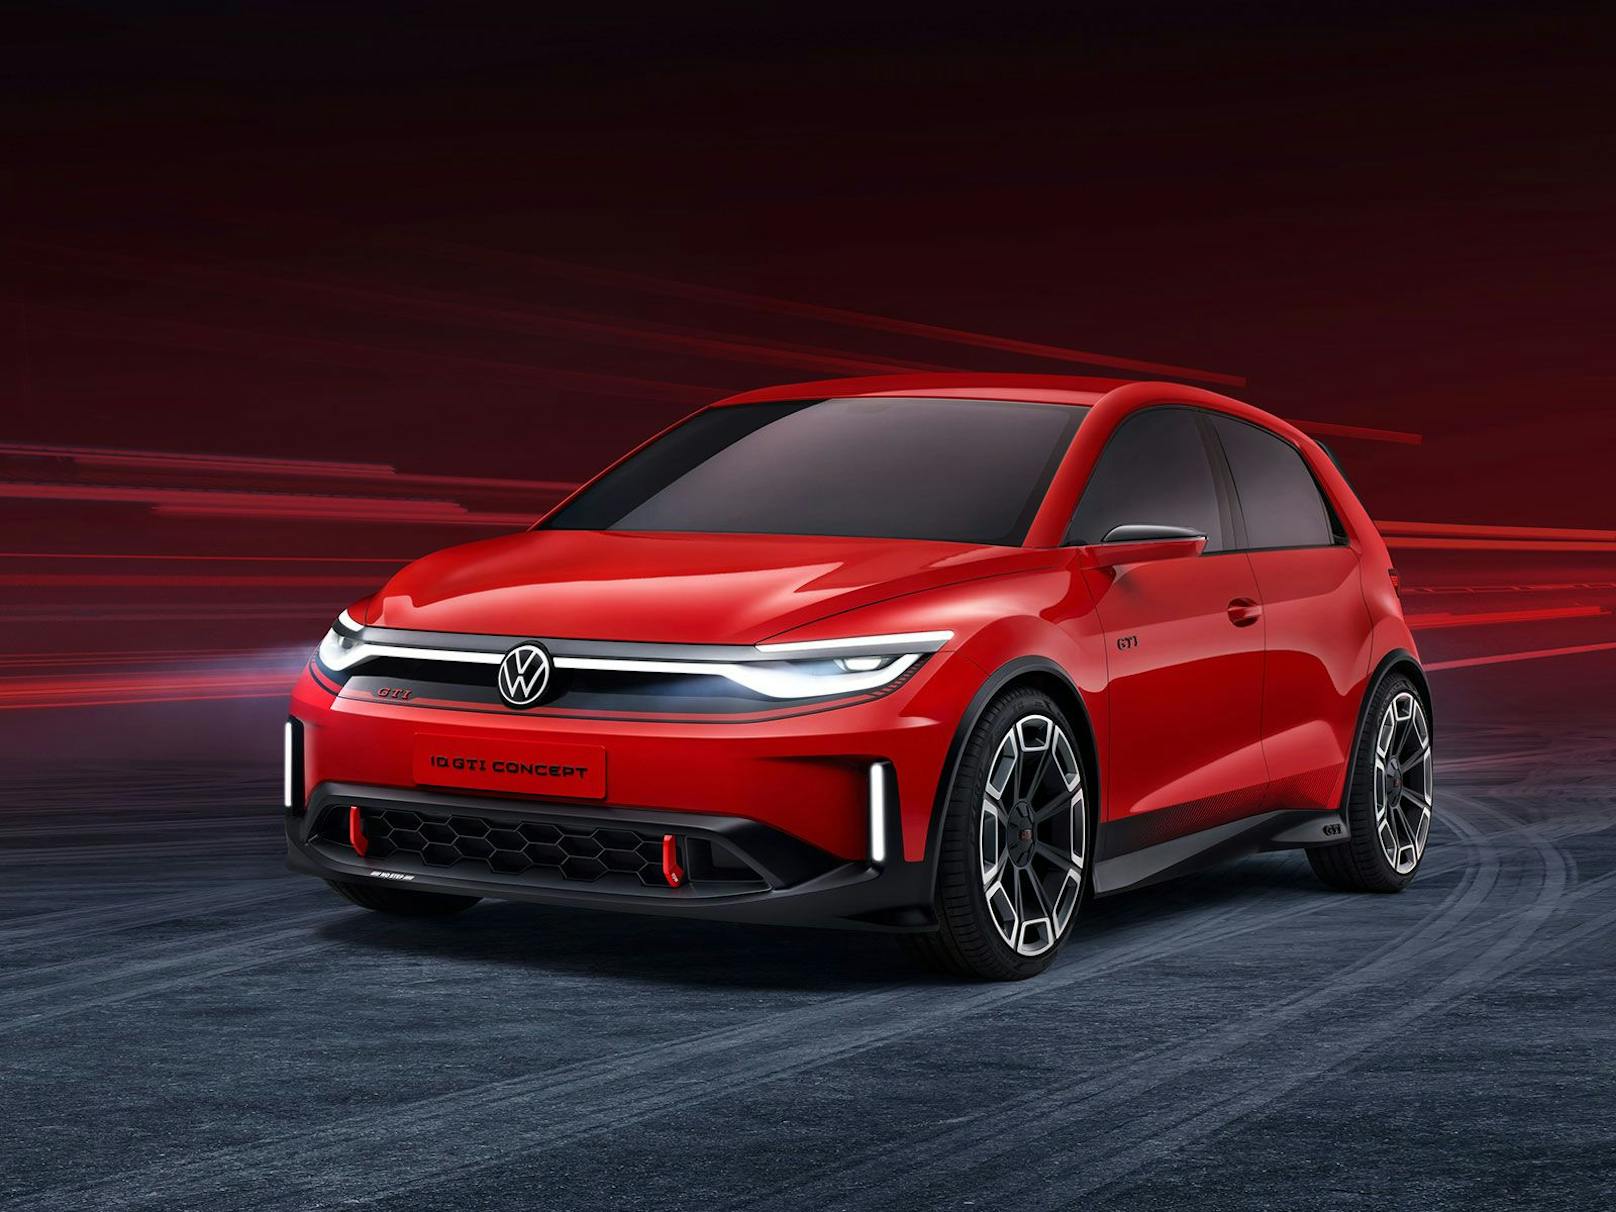 VW blickt mit dem ID. GTI Concept in die Zukunft